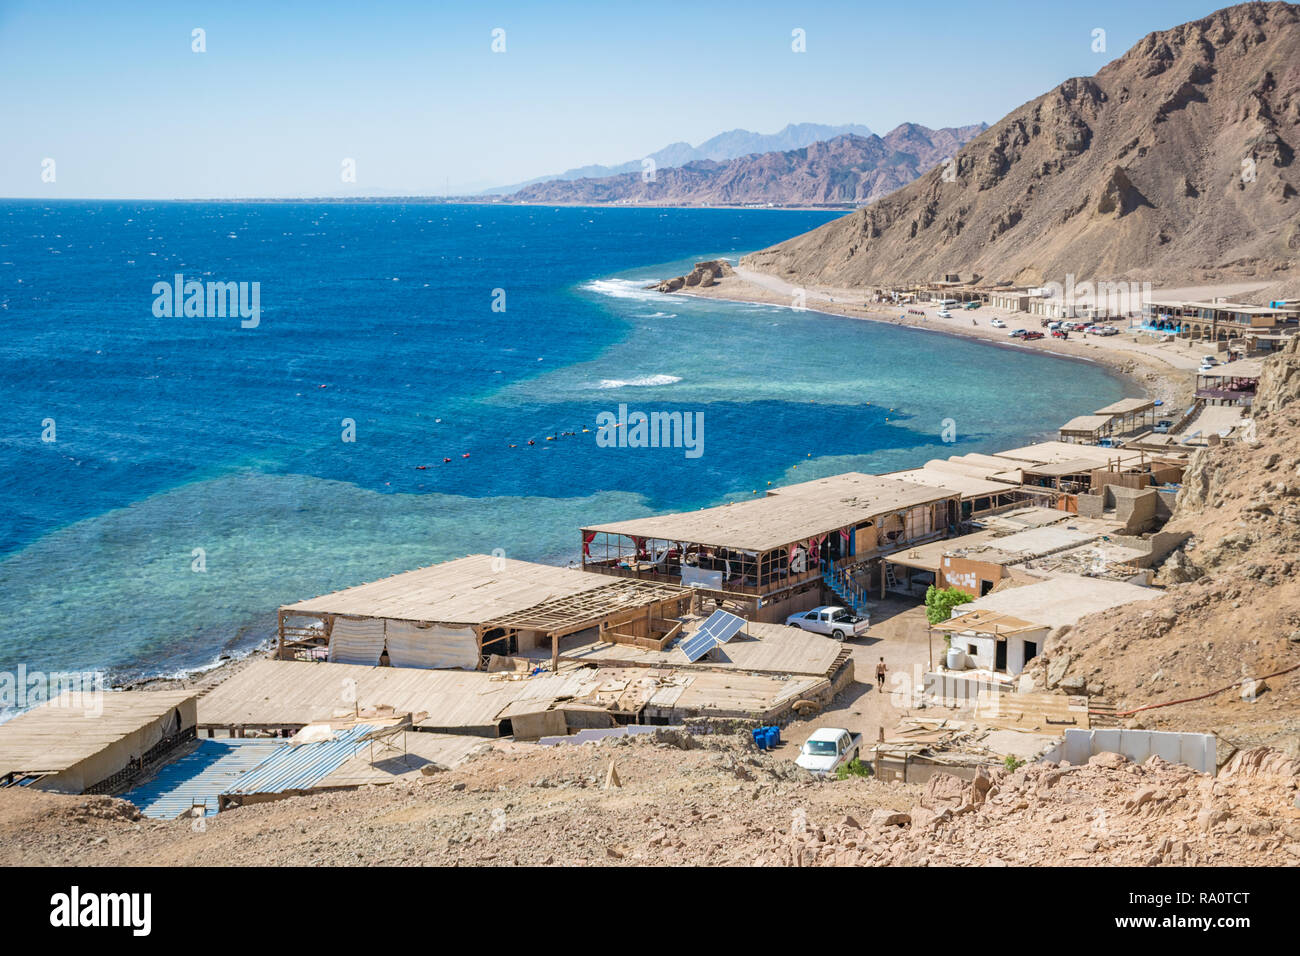 Blue Hole è una popolare località di immersione sul Sinai orientale, a pochi chilometri a nord di Dahab, Egitto sulla costa del Mar Rosso. Foto Stock